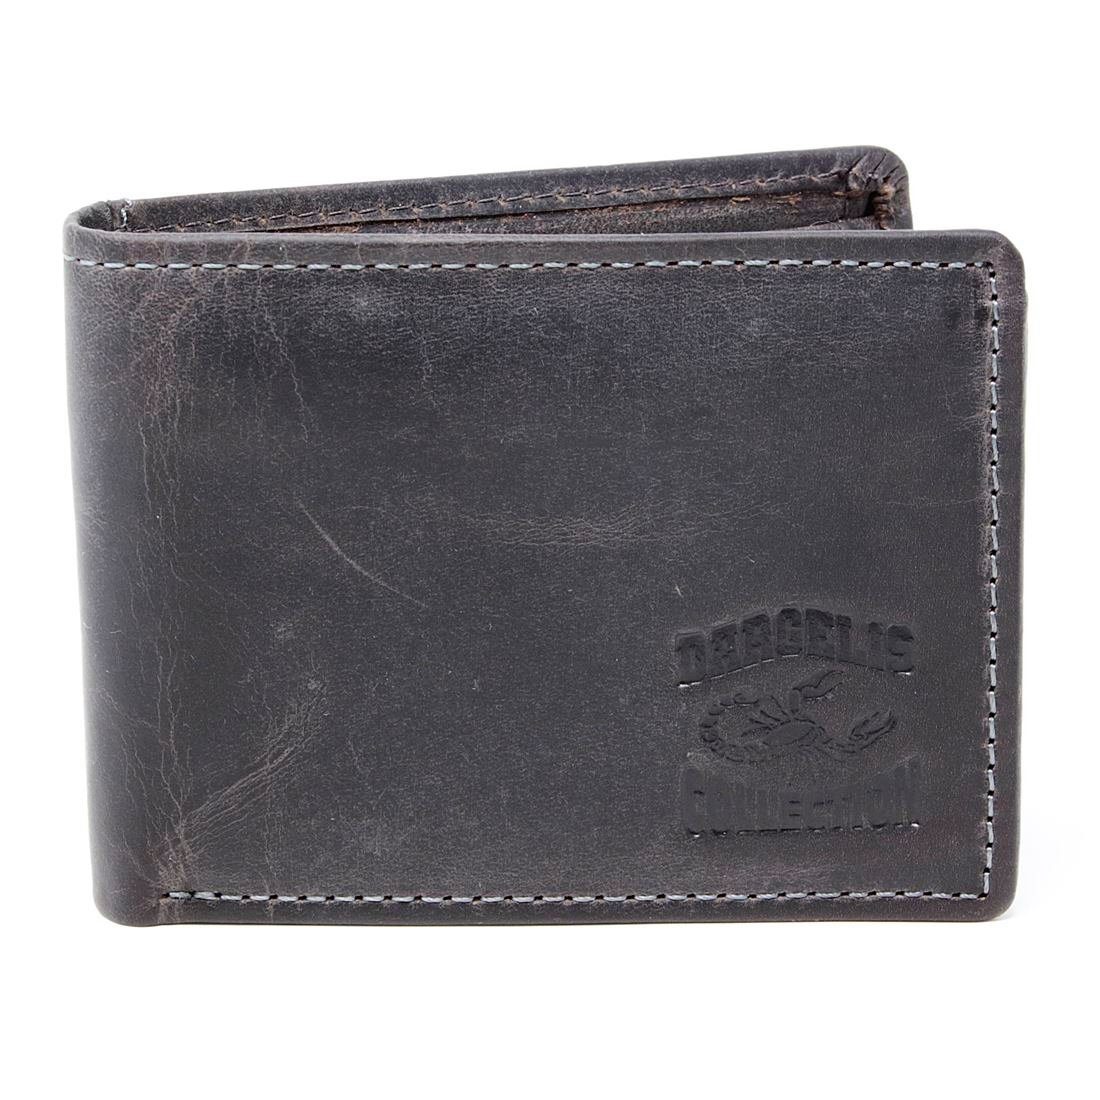 Lederbörse mit Männerbörse Münzfach RFID Börse Brieftasche Herren Leder SHG Schutz Geldbörse Portemonnaie,